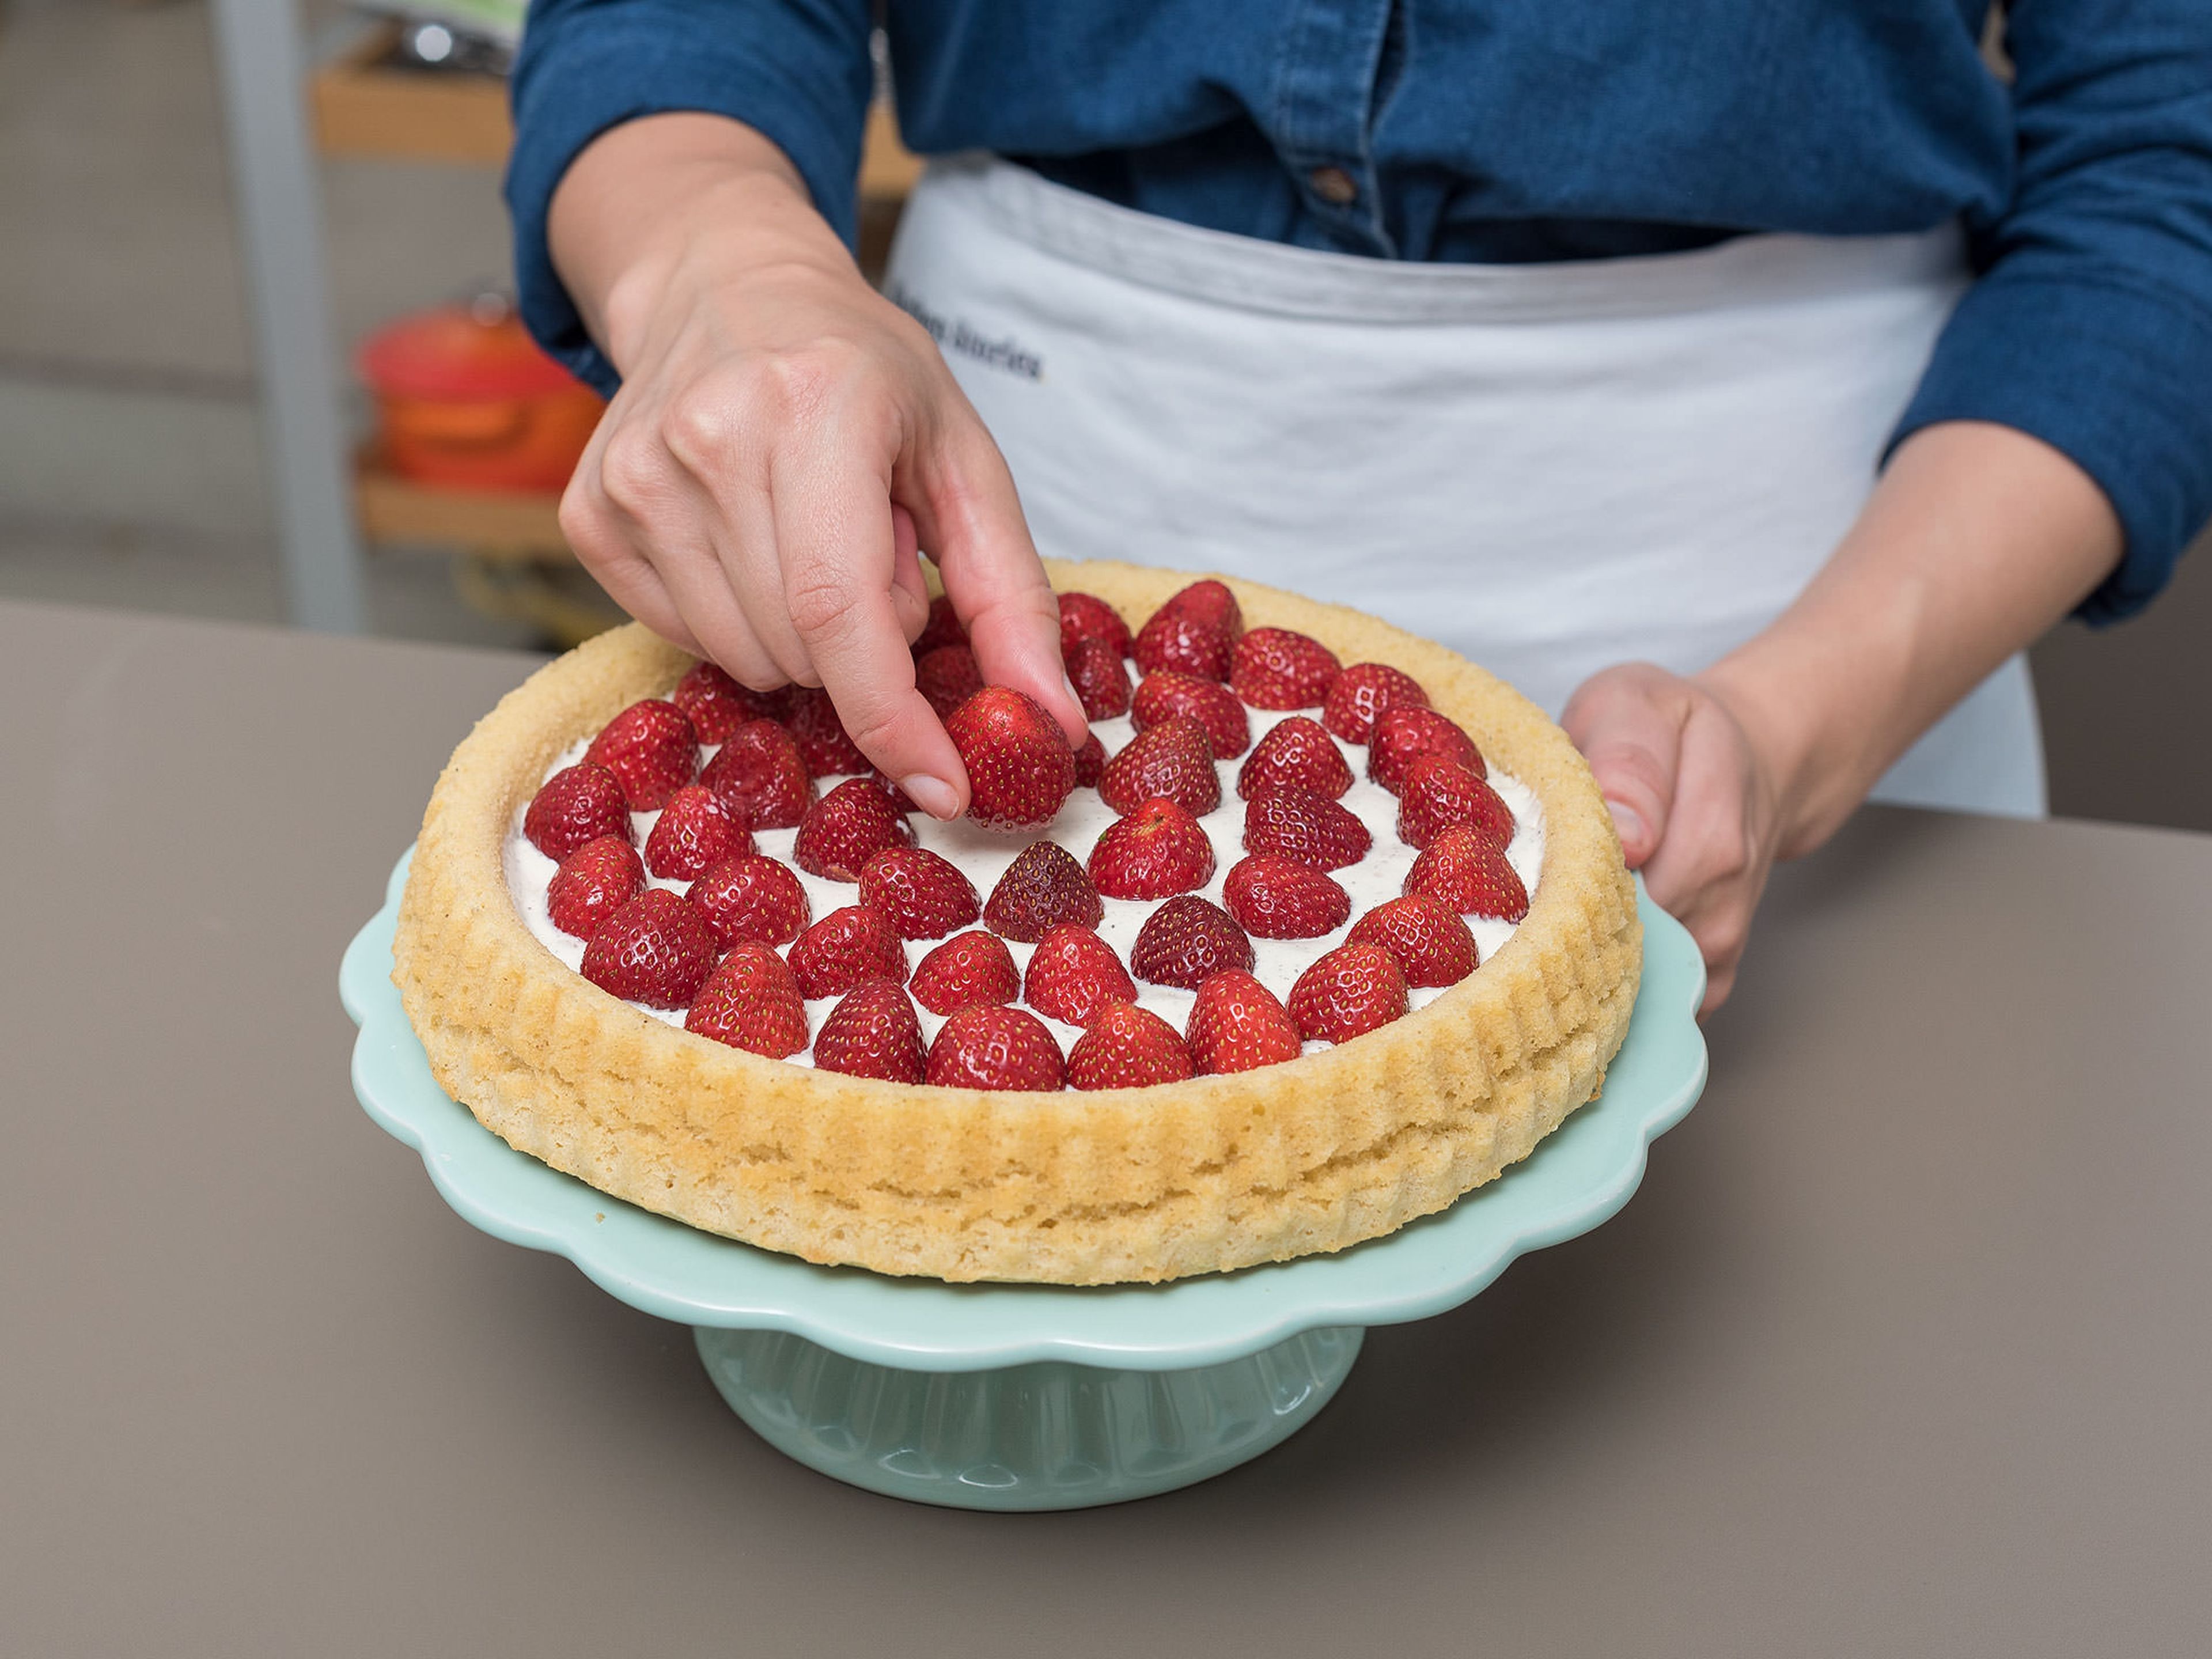 Einen Teller auf die abgekühlte Backform legen und den Kuchenboden auf den Teller stürzen. Die verfeinerte Mascarpone auf den Kuchenboden streichen und die Erdbeeren darauf verteilen. Mit gerösteten, gehobelten Mandeln bestreuen und mit Minzblättern dekorieren. Guten Appetit!